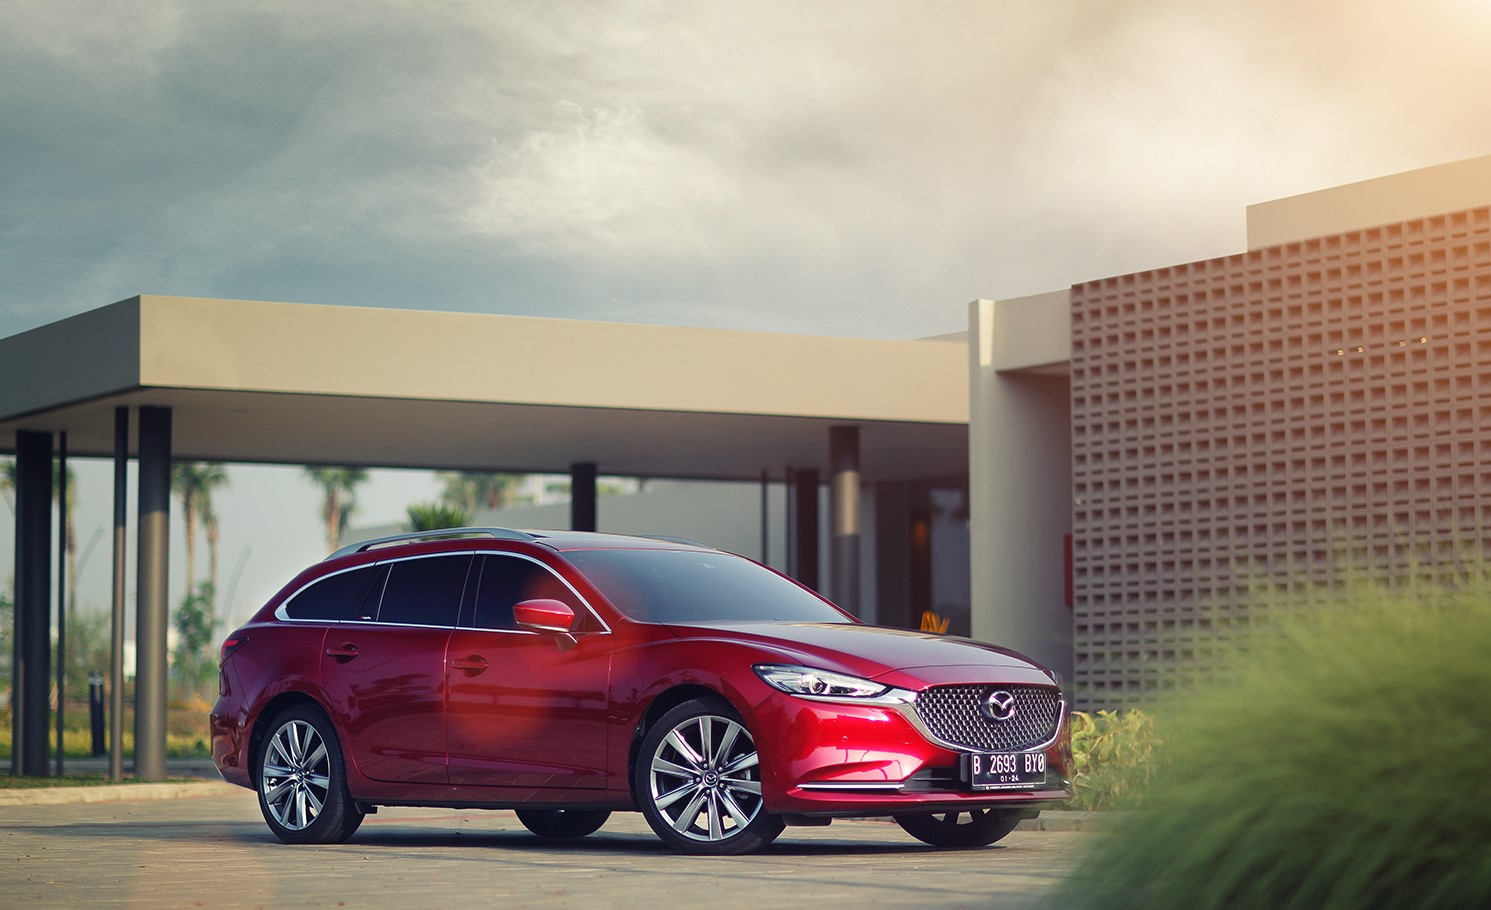 Harga Mazda 6 Estate Terbaru, Spesifikasi dan Interior 2022!